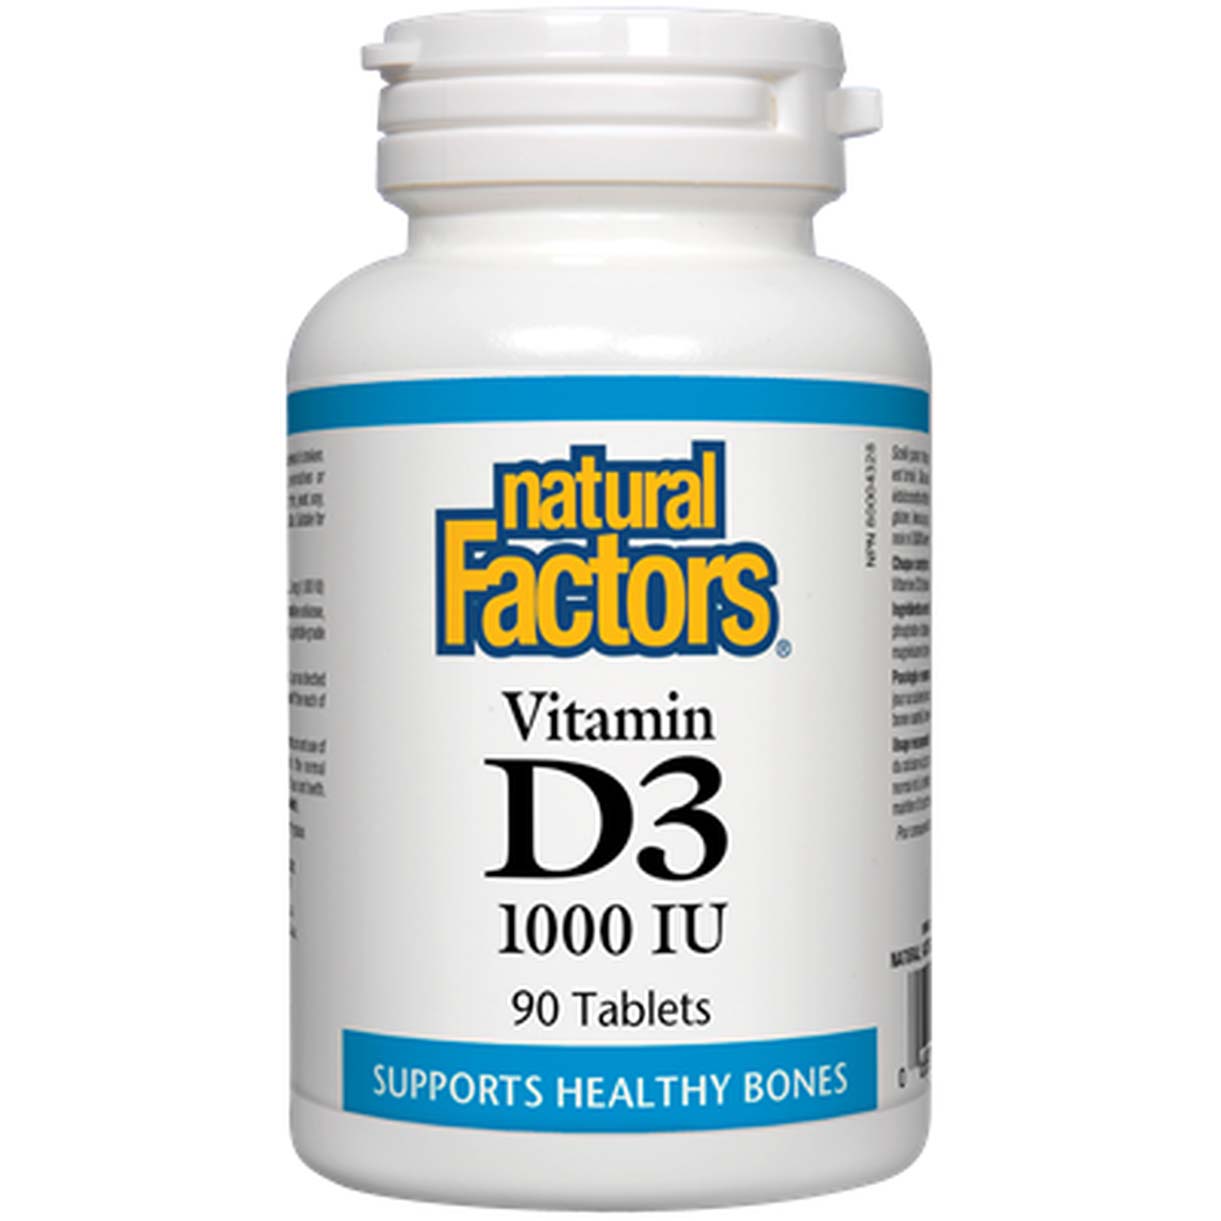 Natural Factors Vitamin D3 90 Tablets 1000 IU